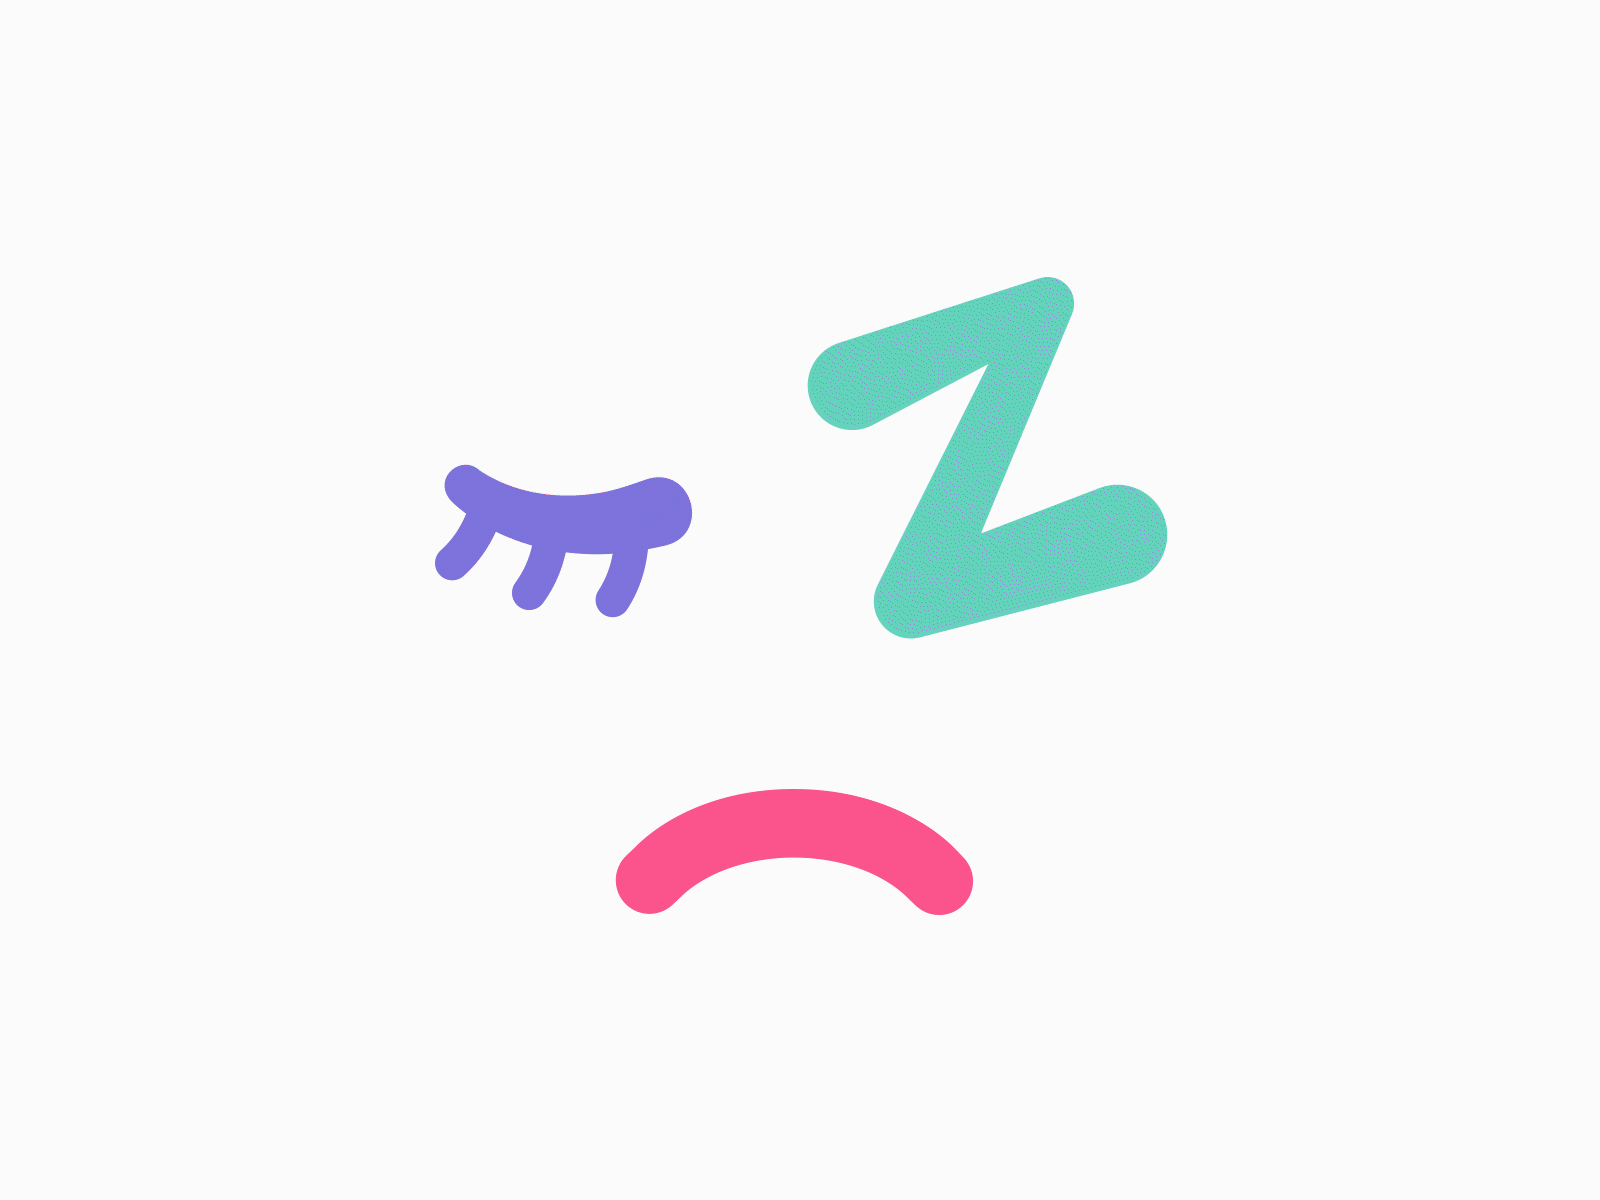 zzz Sleeping adobe aftereffects animated animated gif animated icons animation dazing emote emotion ui ui animation zzz